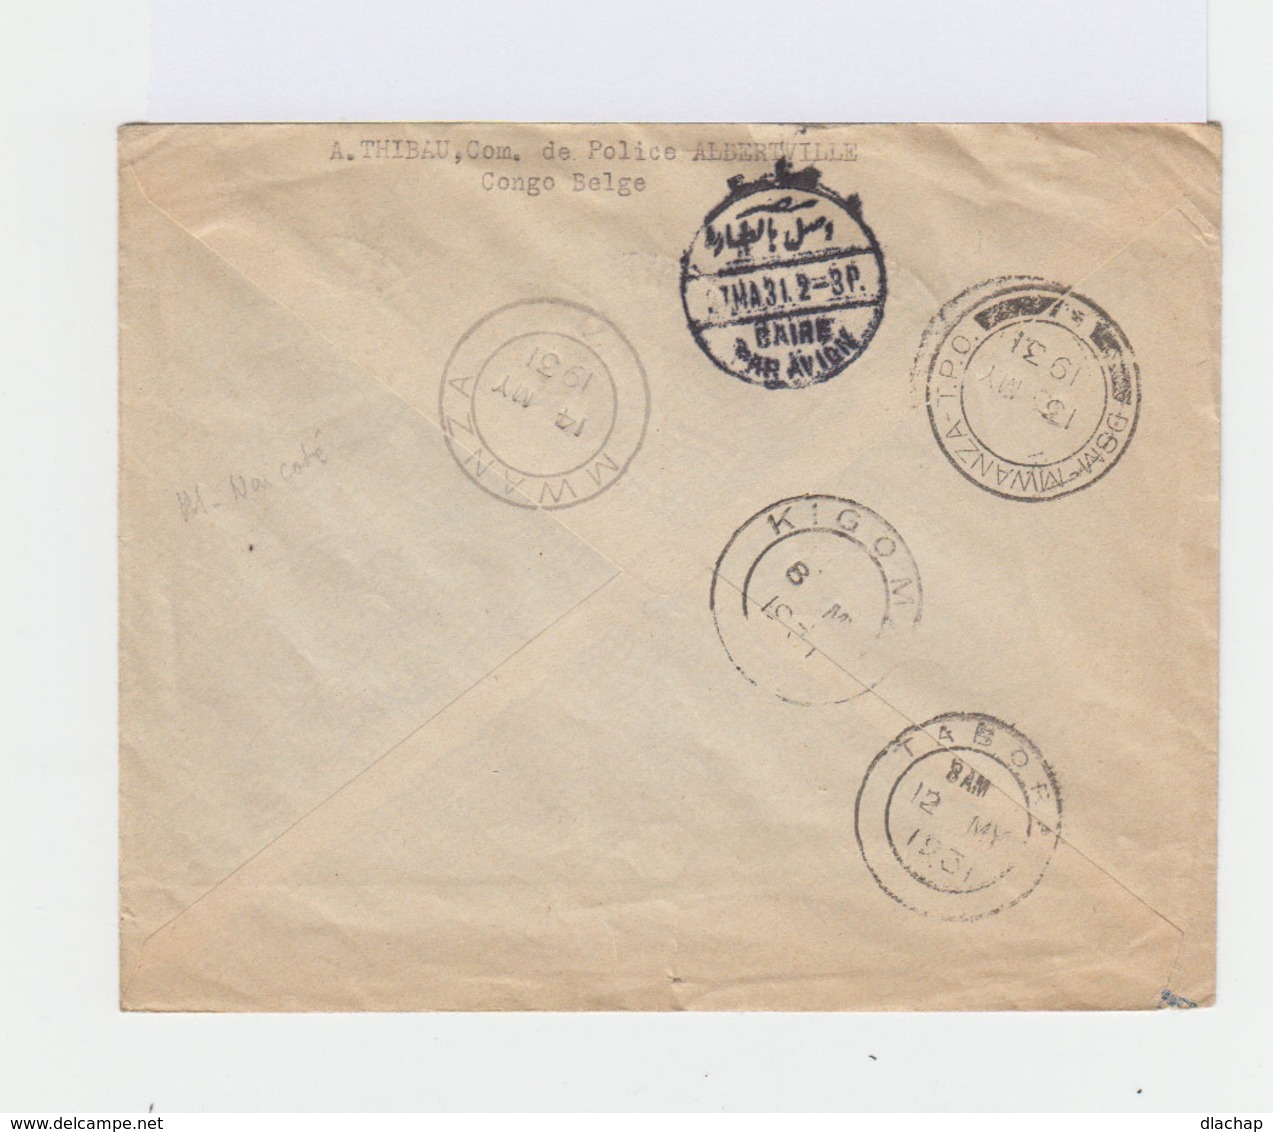 Enveloppe Par Avion 1931. Trois Timbres Congo Belge Service Postal Aérien. Un Timbre Oubangui. (766) - Lettres & Documents